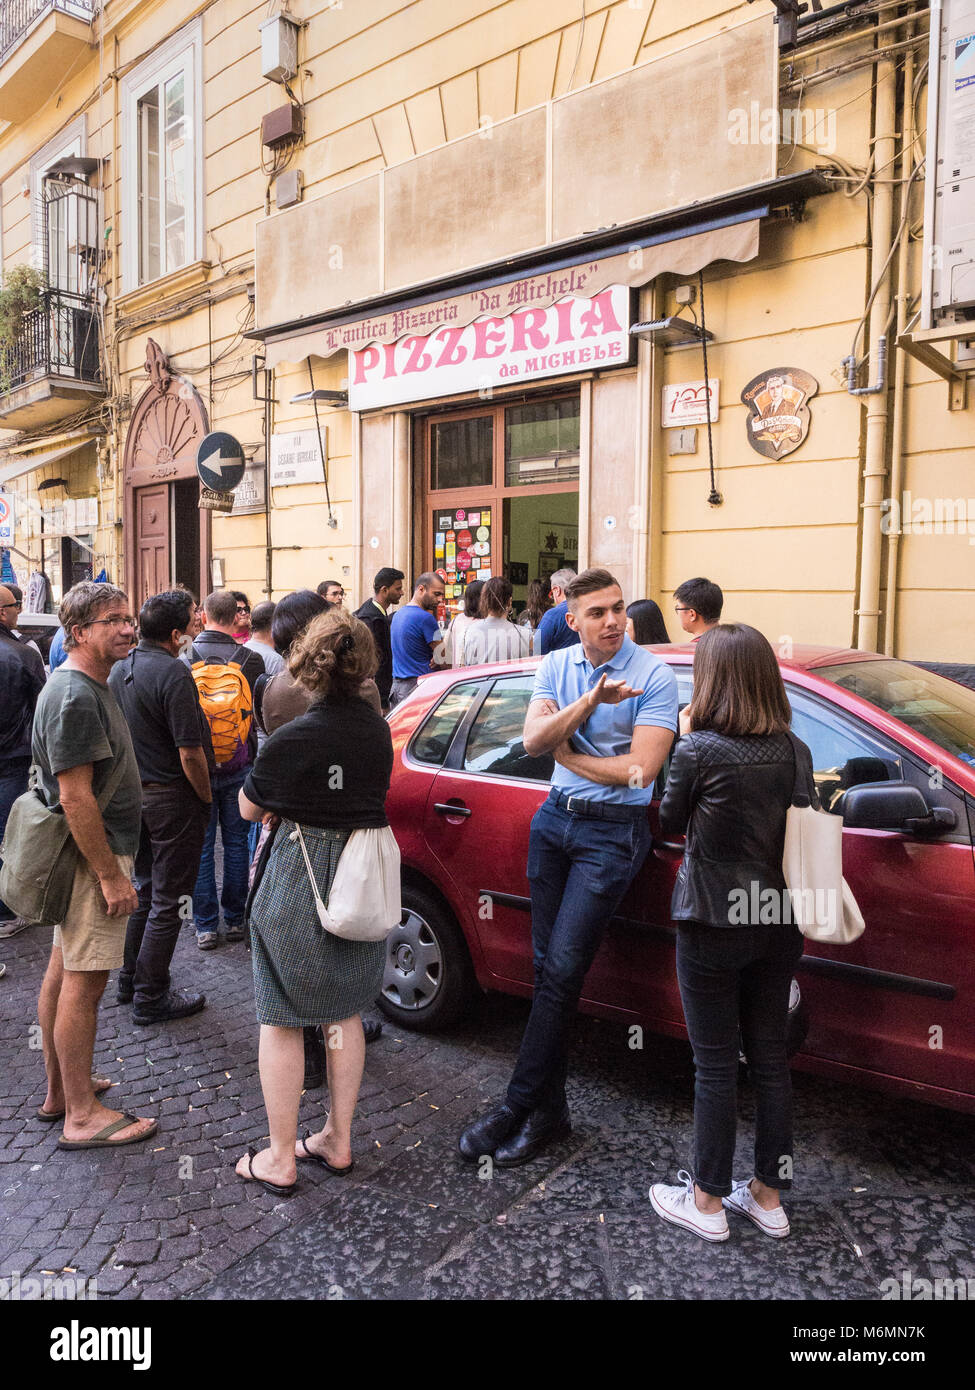 Queue outside L'antica Pizzeria da Michele, Naples, Italy. Stock Photo